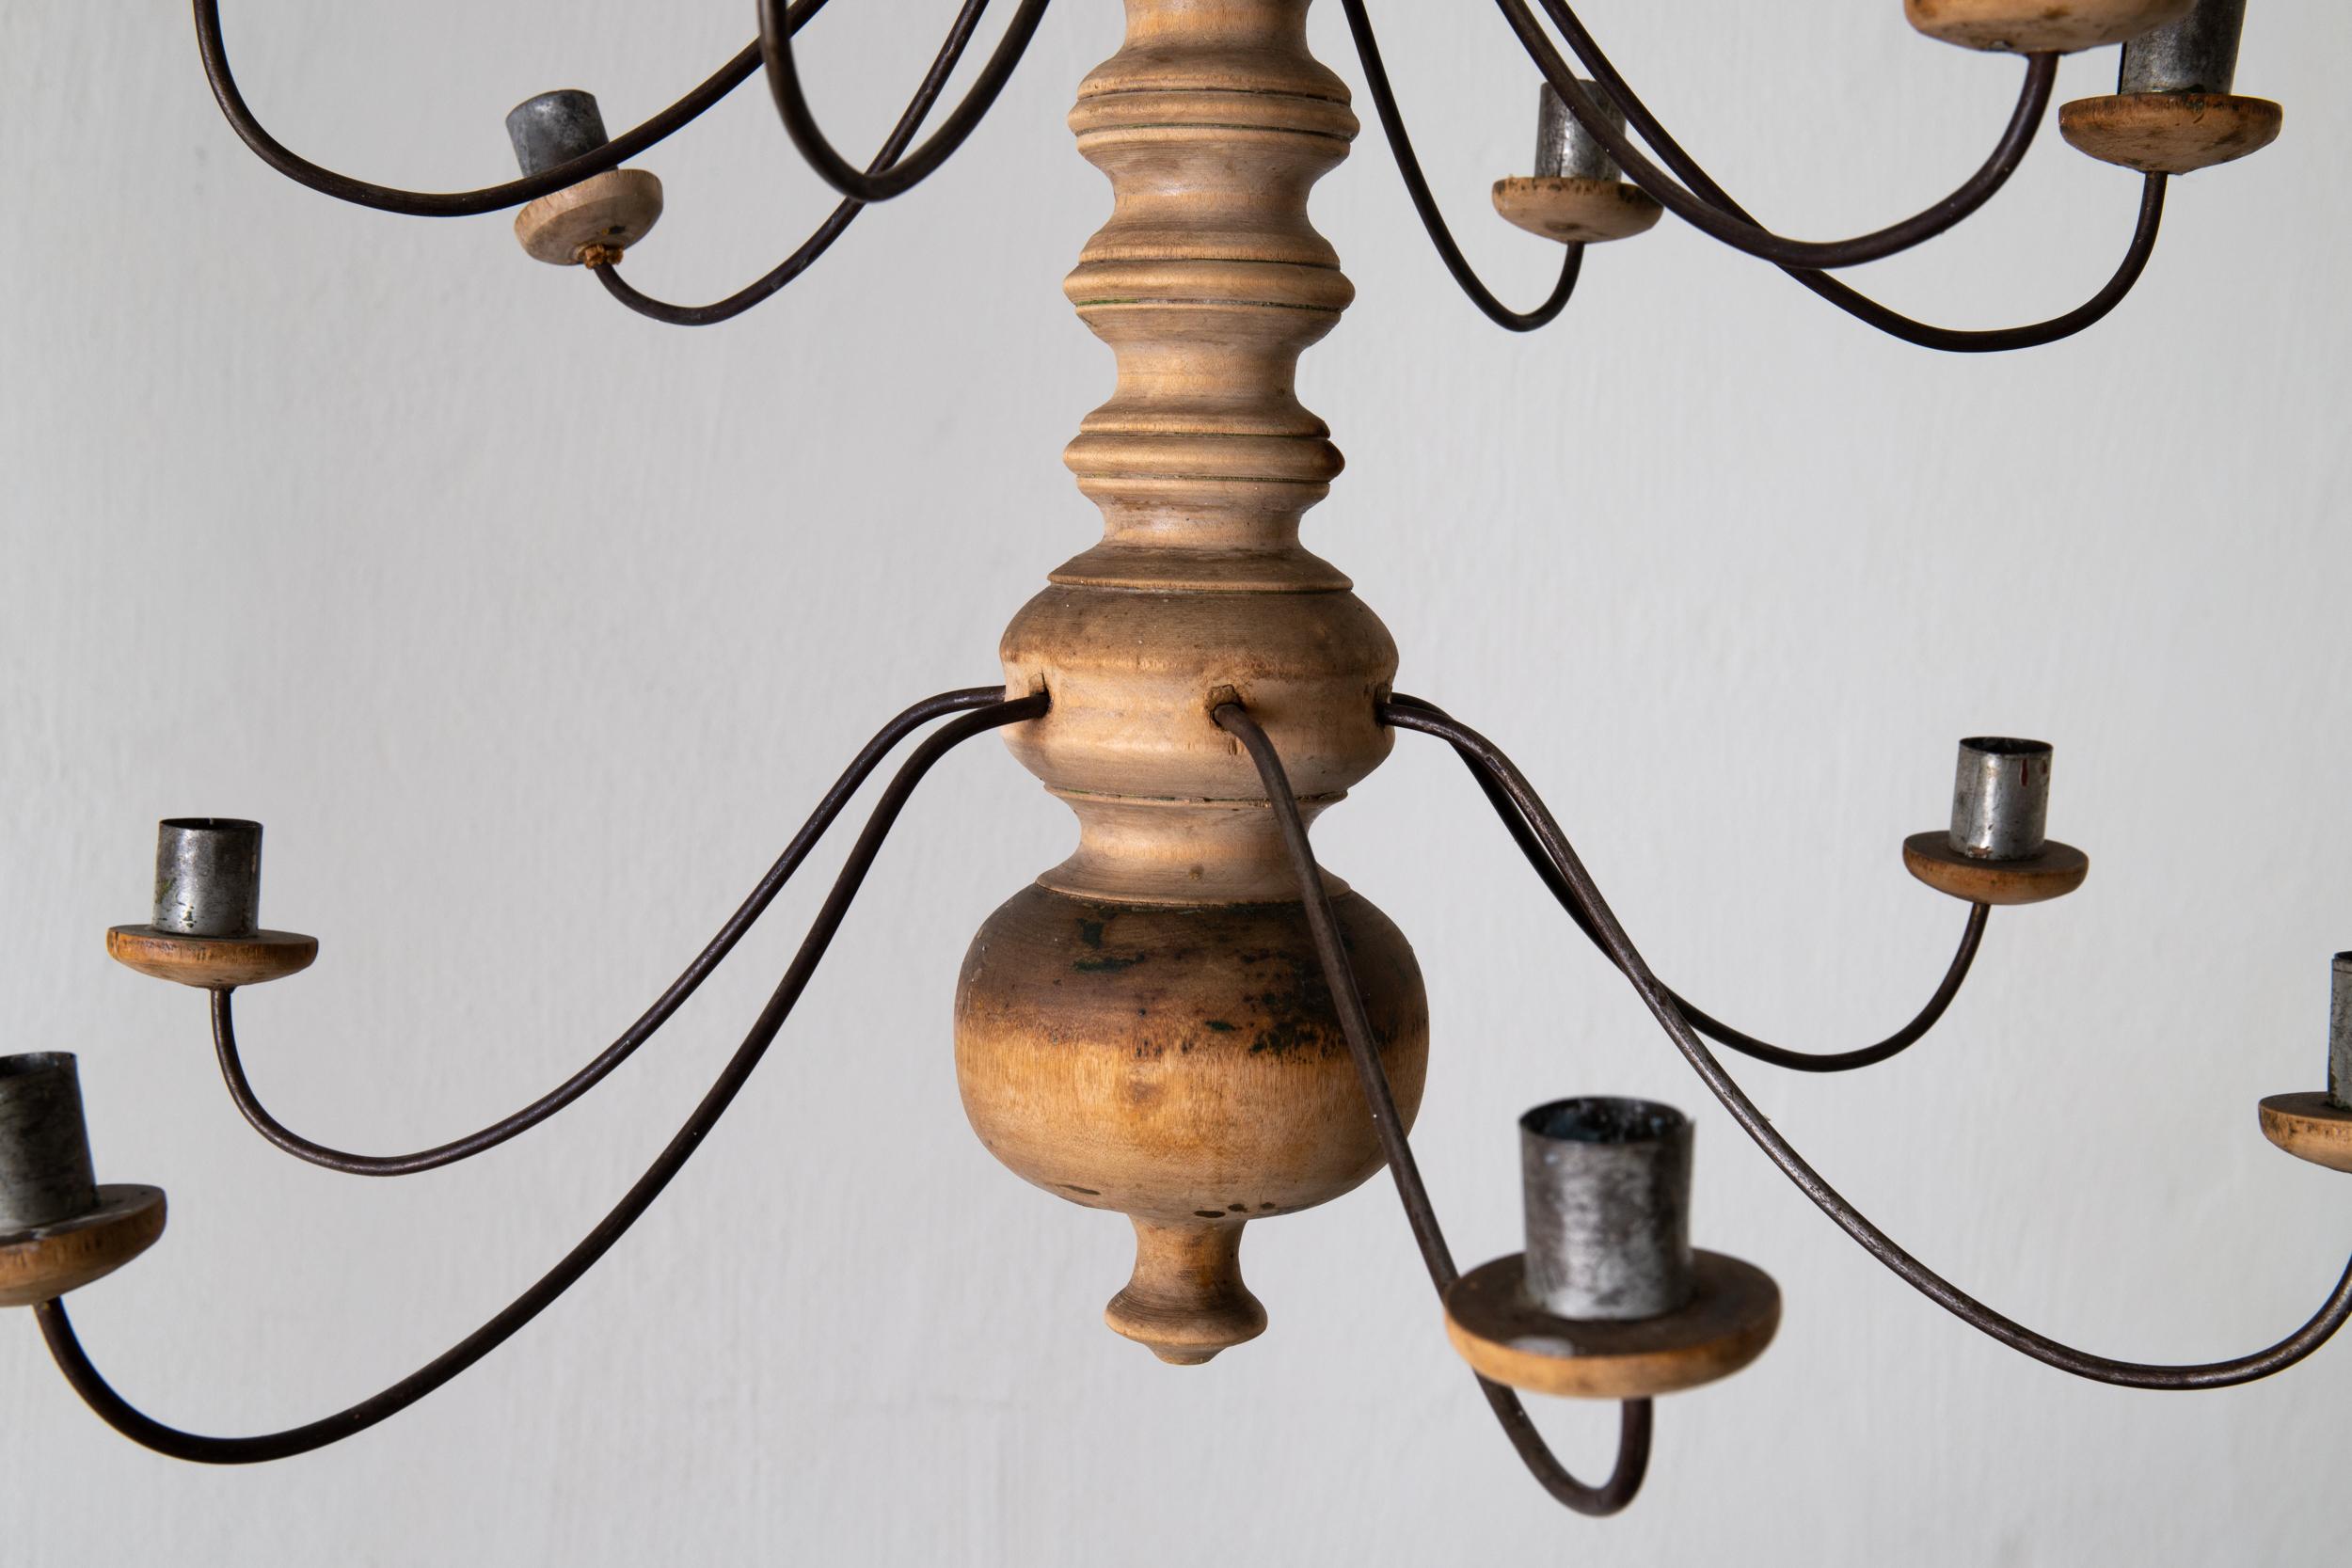 Lustre en bois rustique suédois 18ème siècle, Suède. Un lustre fabriqué en Suède au cours du 18e siècle. Corps en bois avec bougeoirs en métal pour 16 bougies.